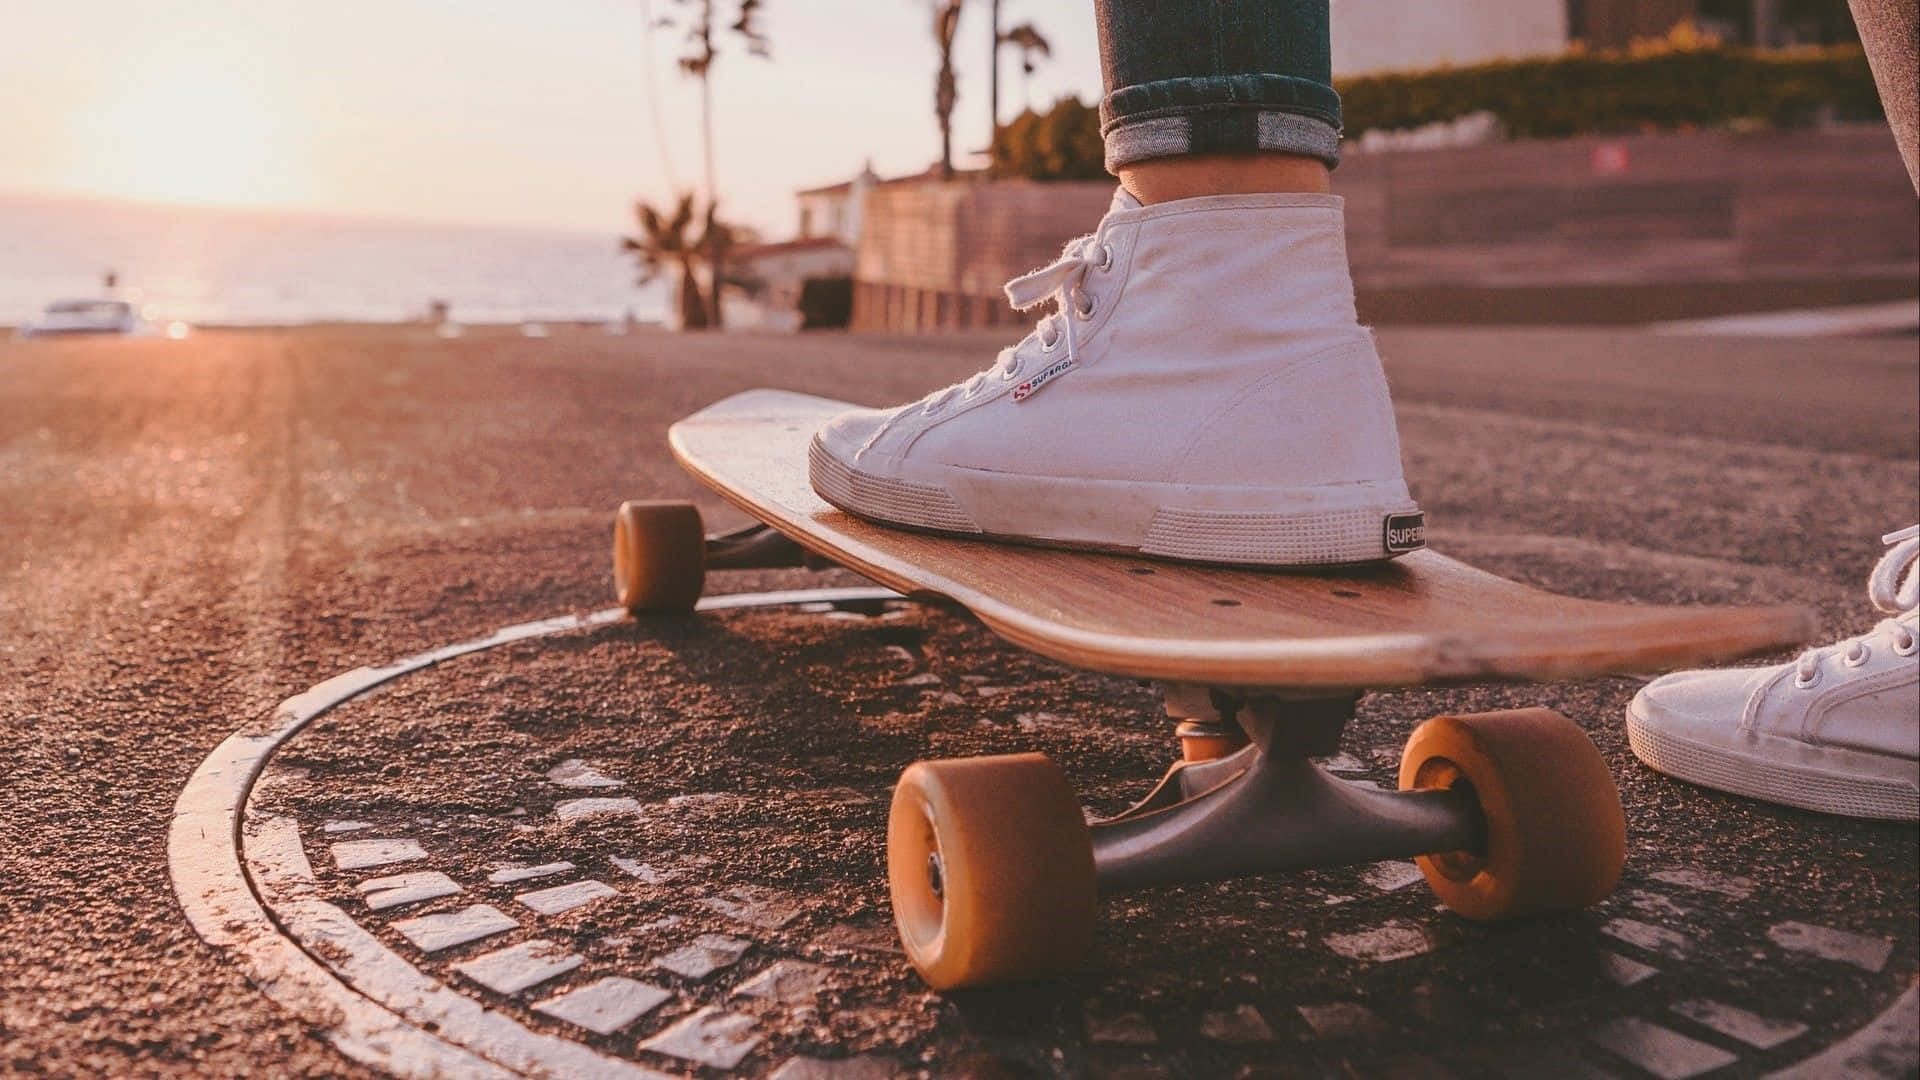 Sunset Skateboardingon Coastal Road.jpg Wallpaper